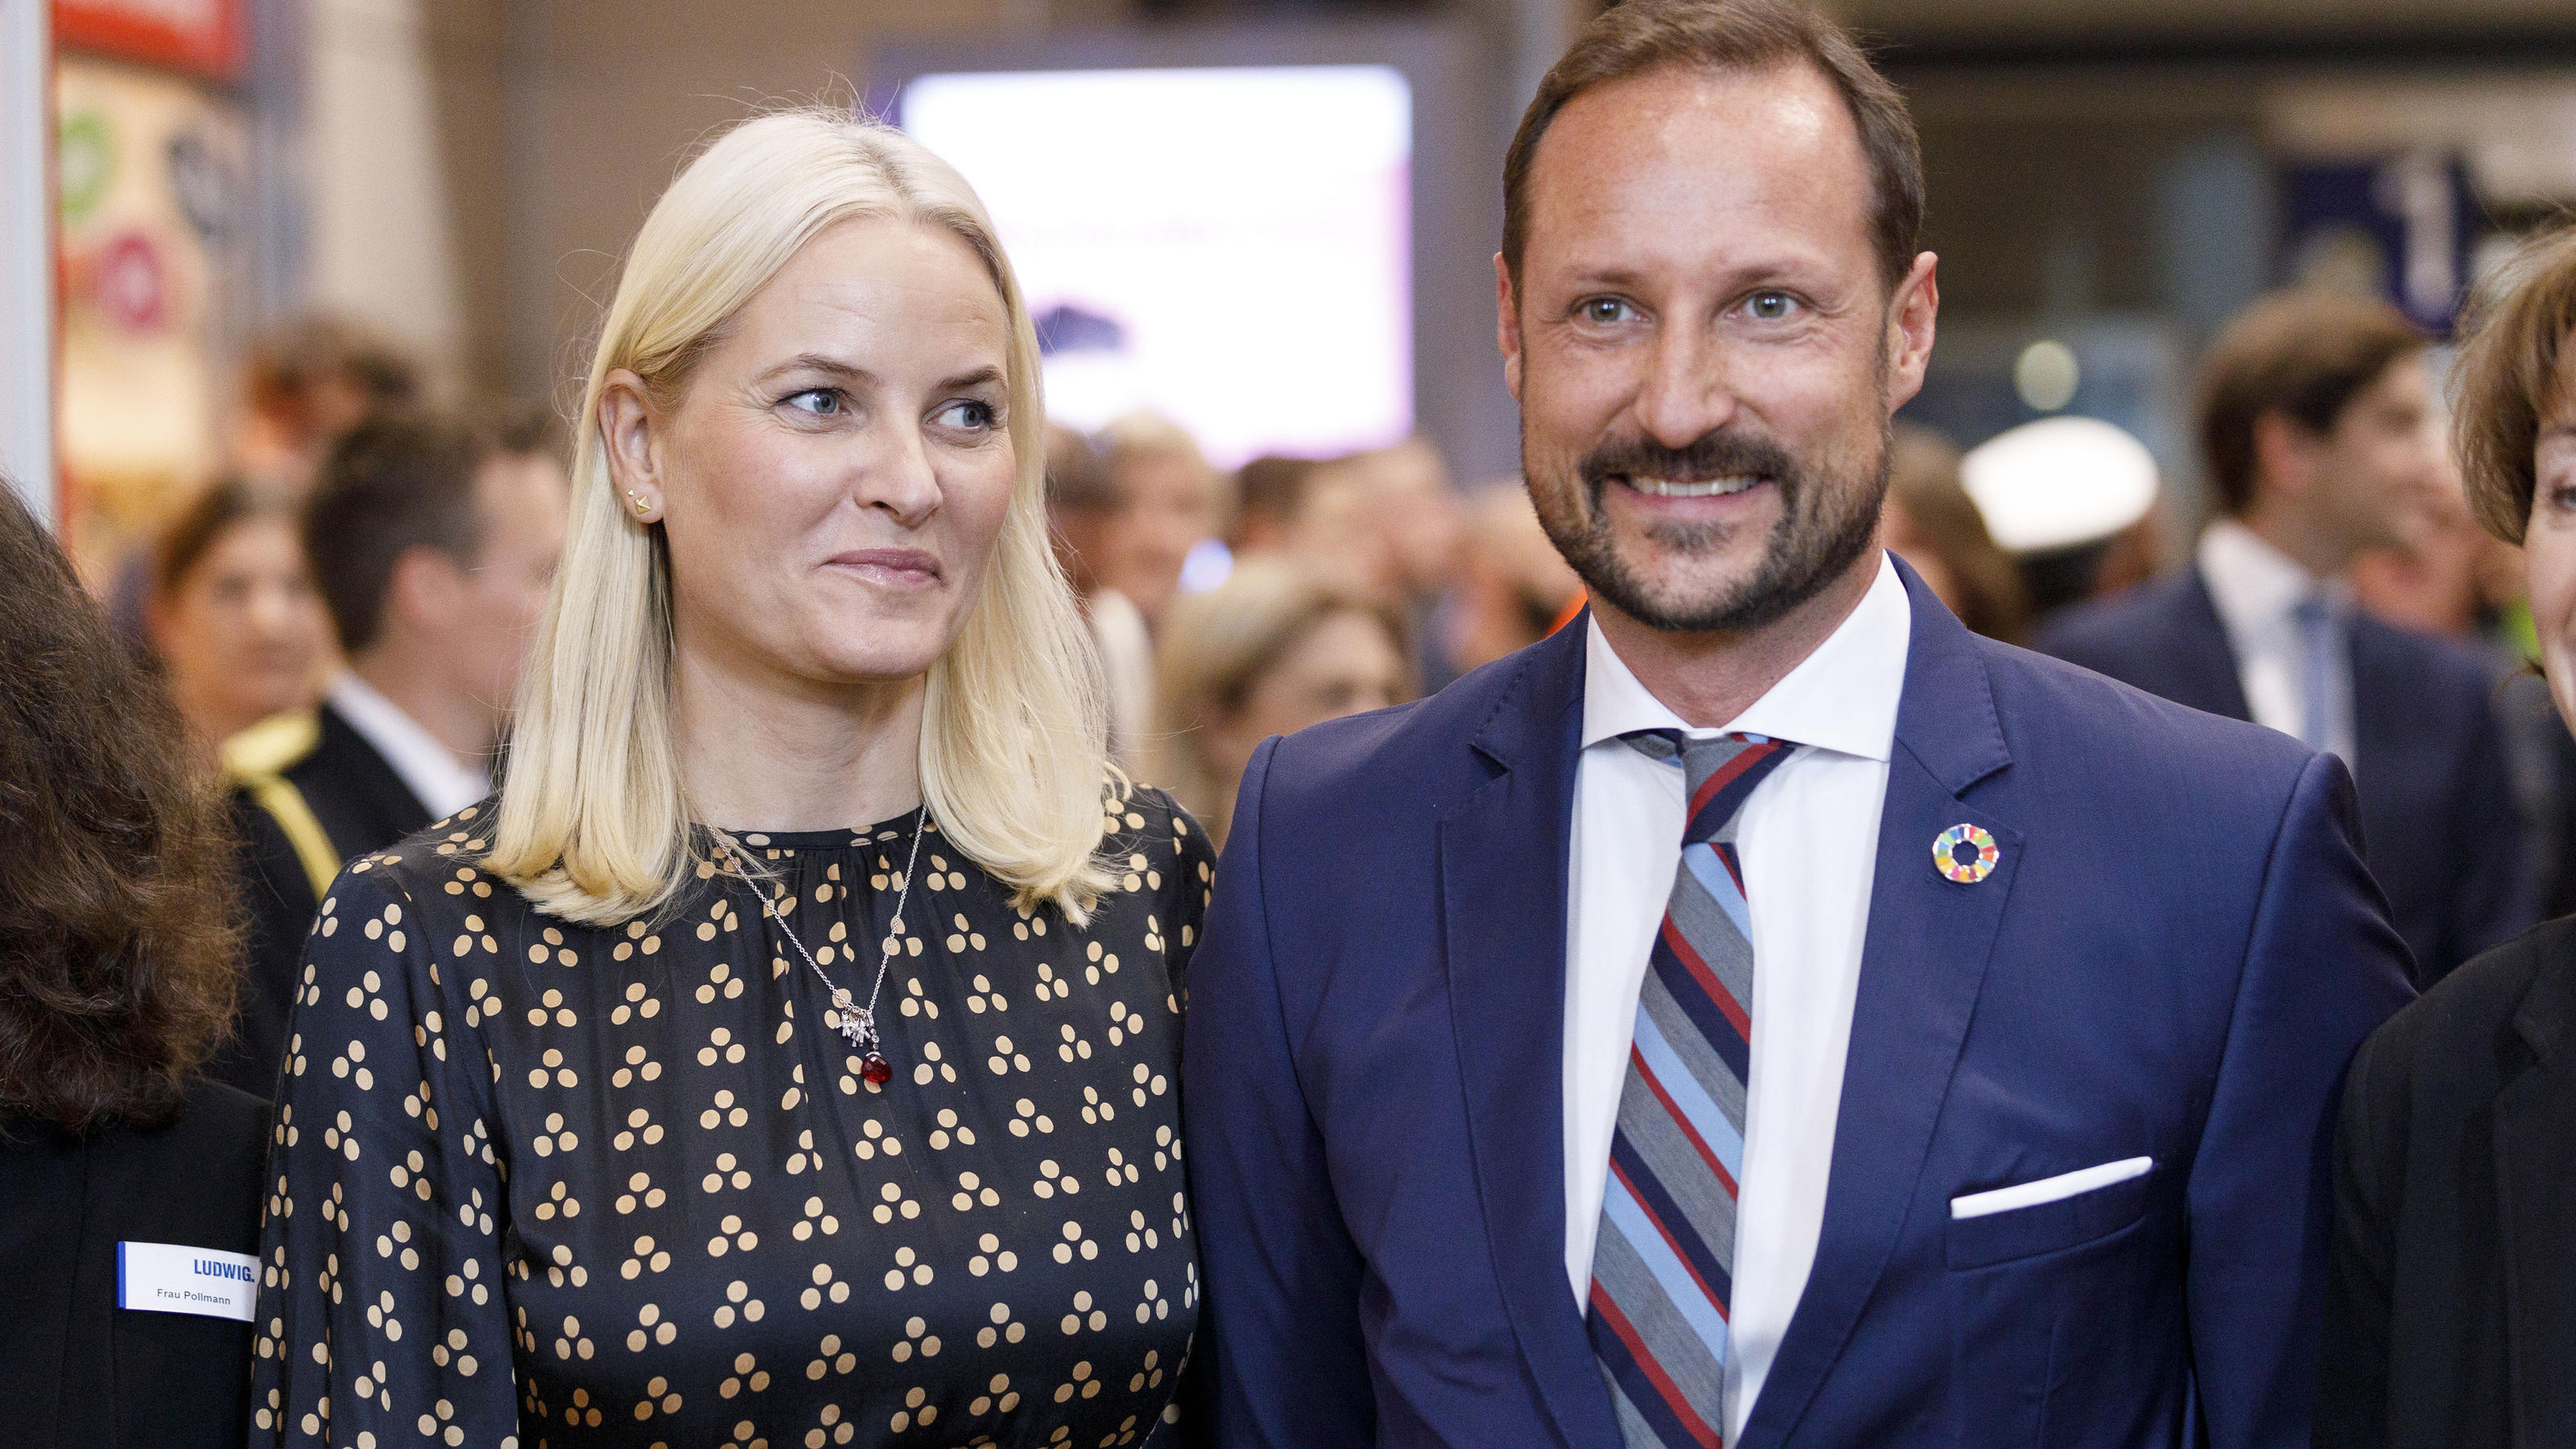 Kronprinzessin Mette-Marit und Kronprinz Haakon von Norwegen auf Deutschlandbesuch.